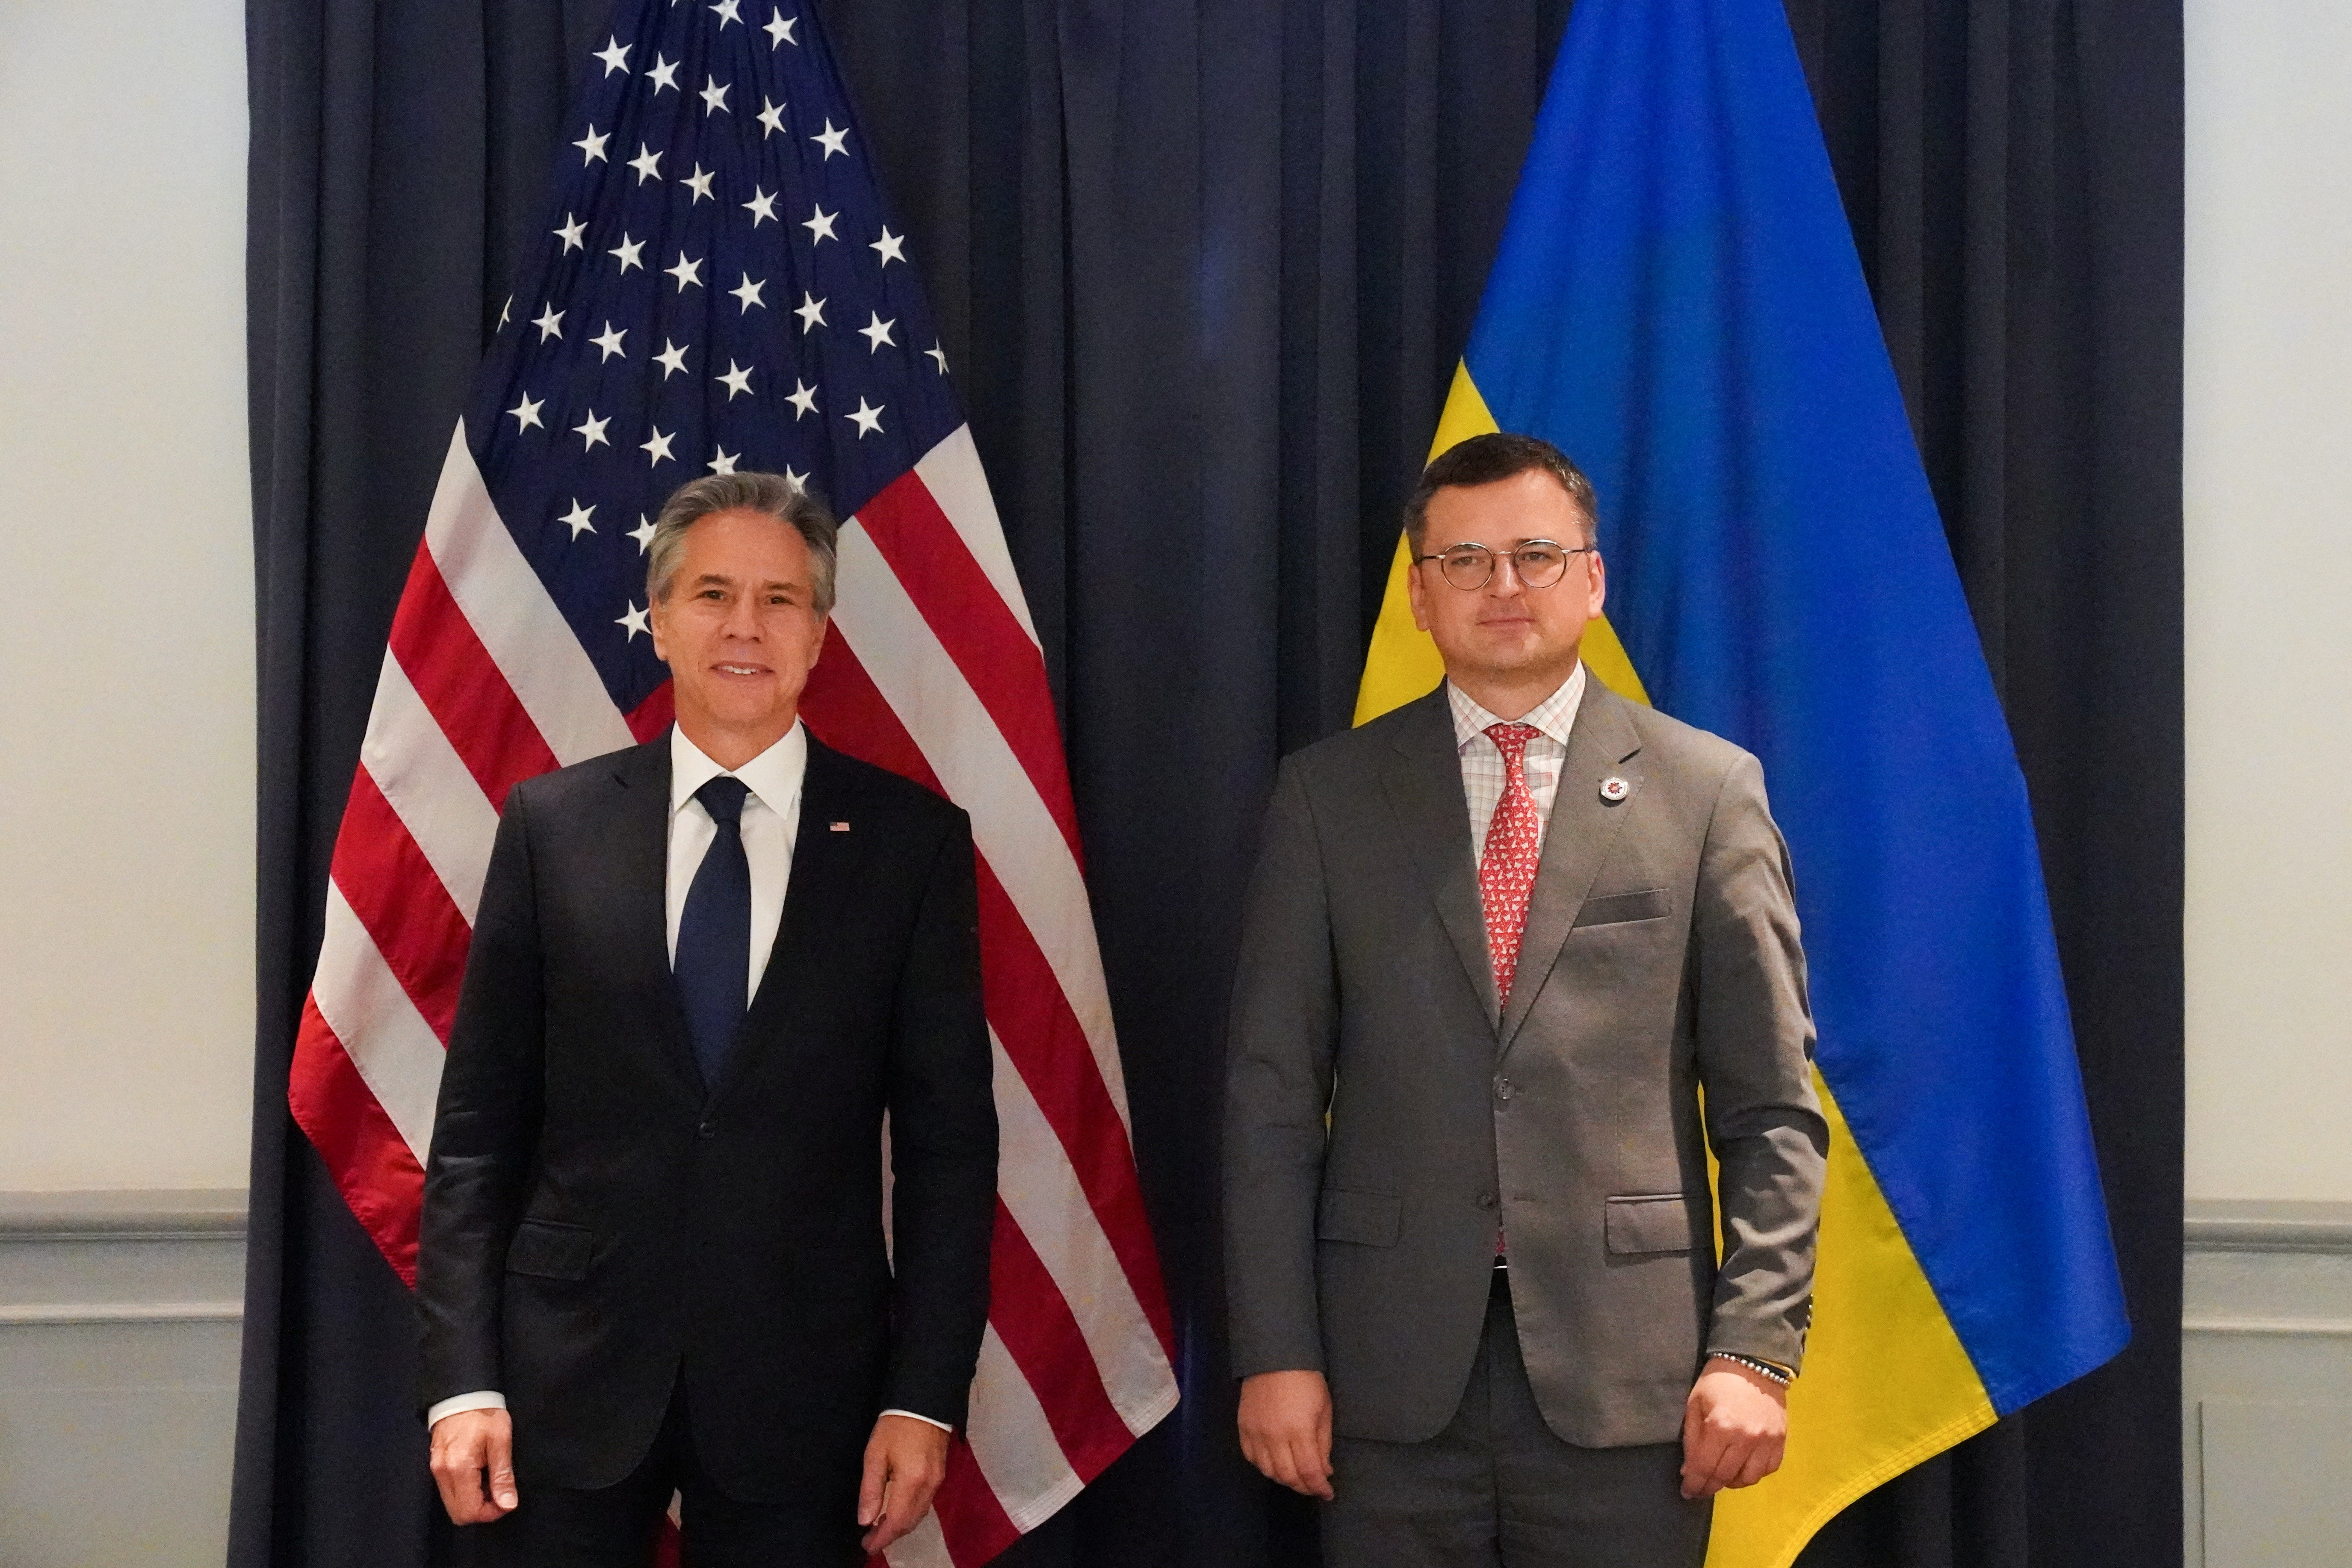 El Secretario de Estado de Estados Unidos, Antony Blinken, se reúne con el Ministro de Asuntos Exteriores de Ucrania, Dmytro Kuleba, al margen de la cumbre de la ASEAN celebrada en Phnom Penh, Camboya, el 12 de noviembre de 2022. REUTERS/Cindy Liu/Pool